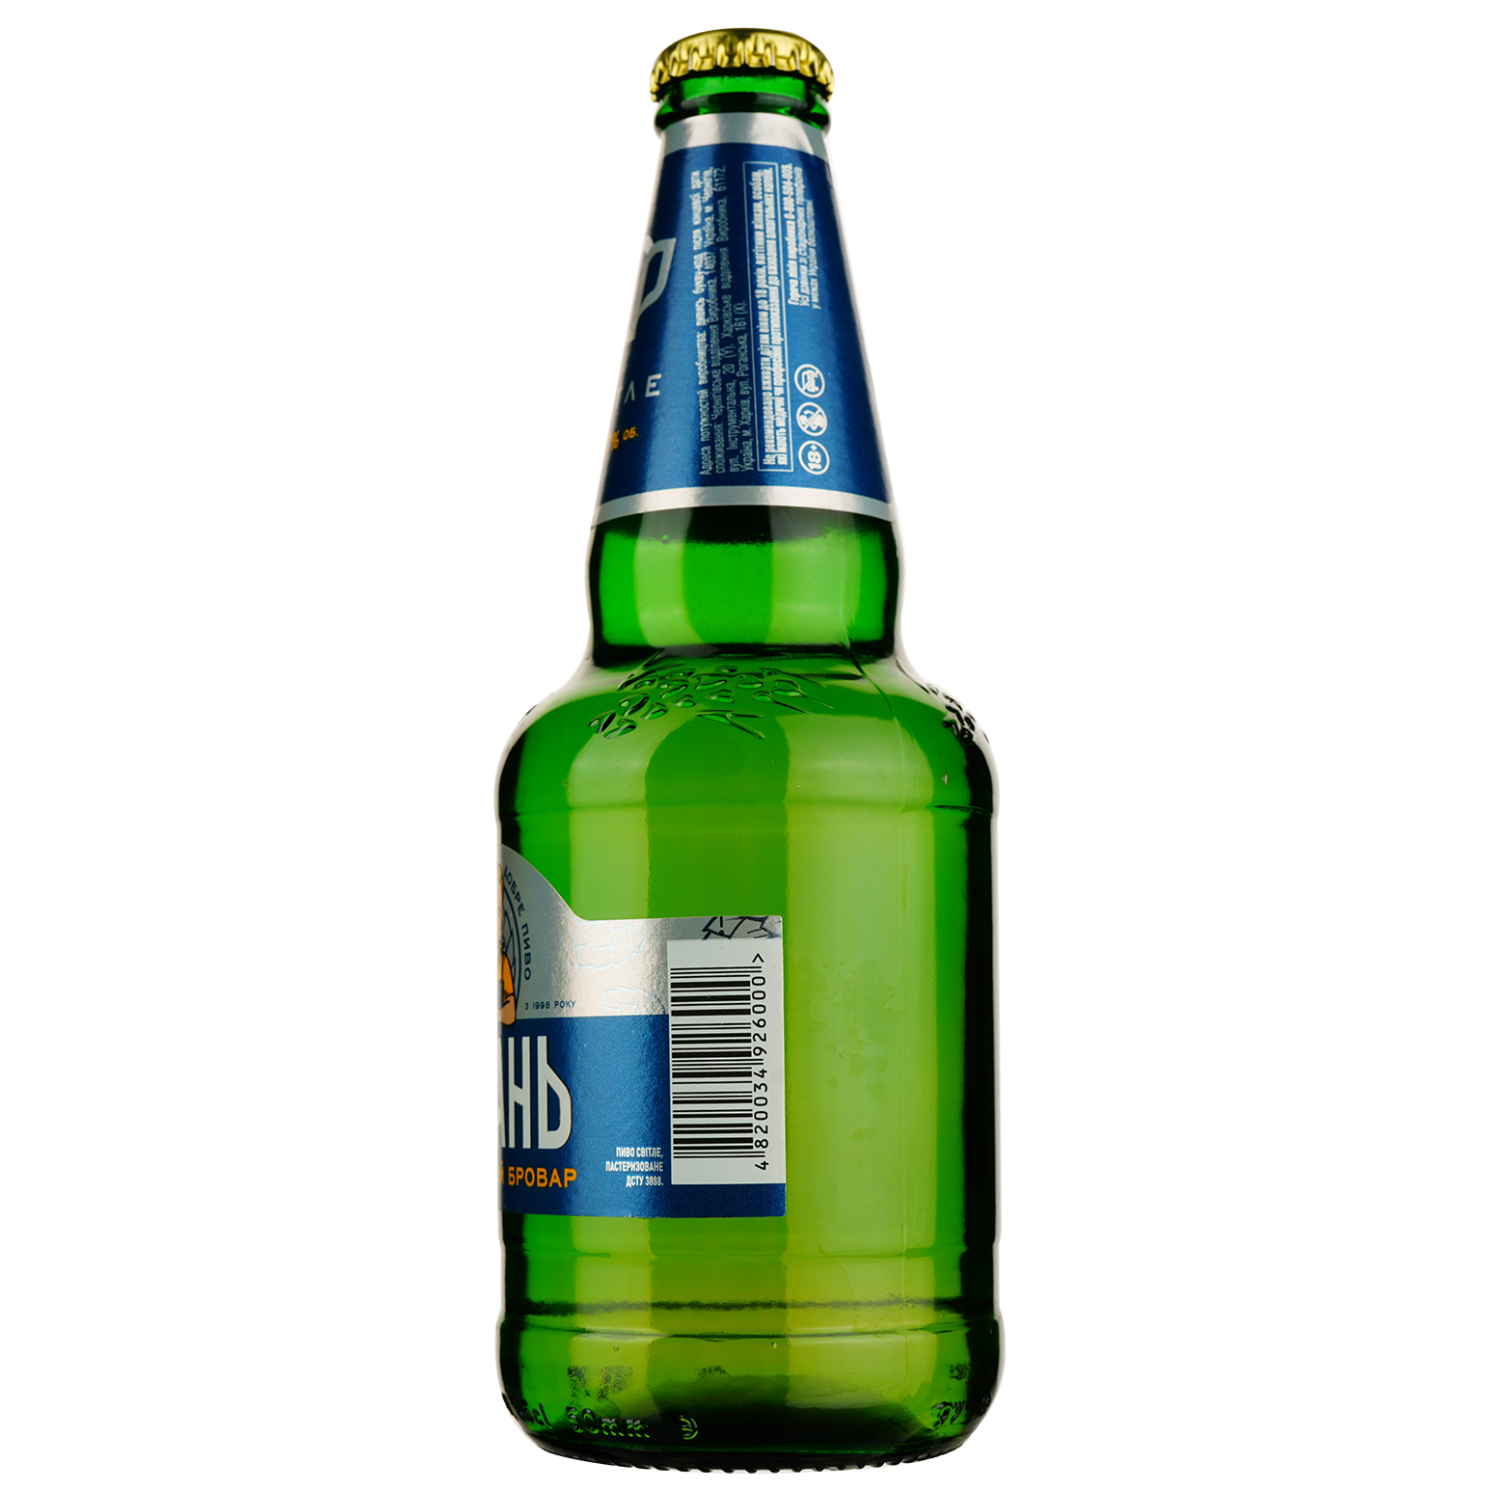 Пиво Рогань Слободской Бровар, светлое, 4,7%, 0,45 л - фото 2